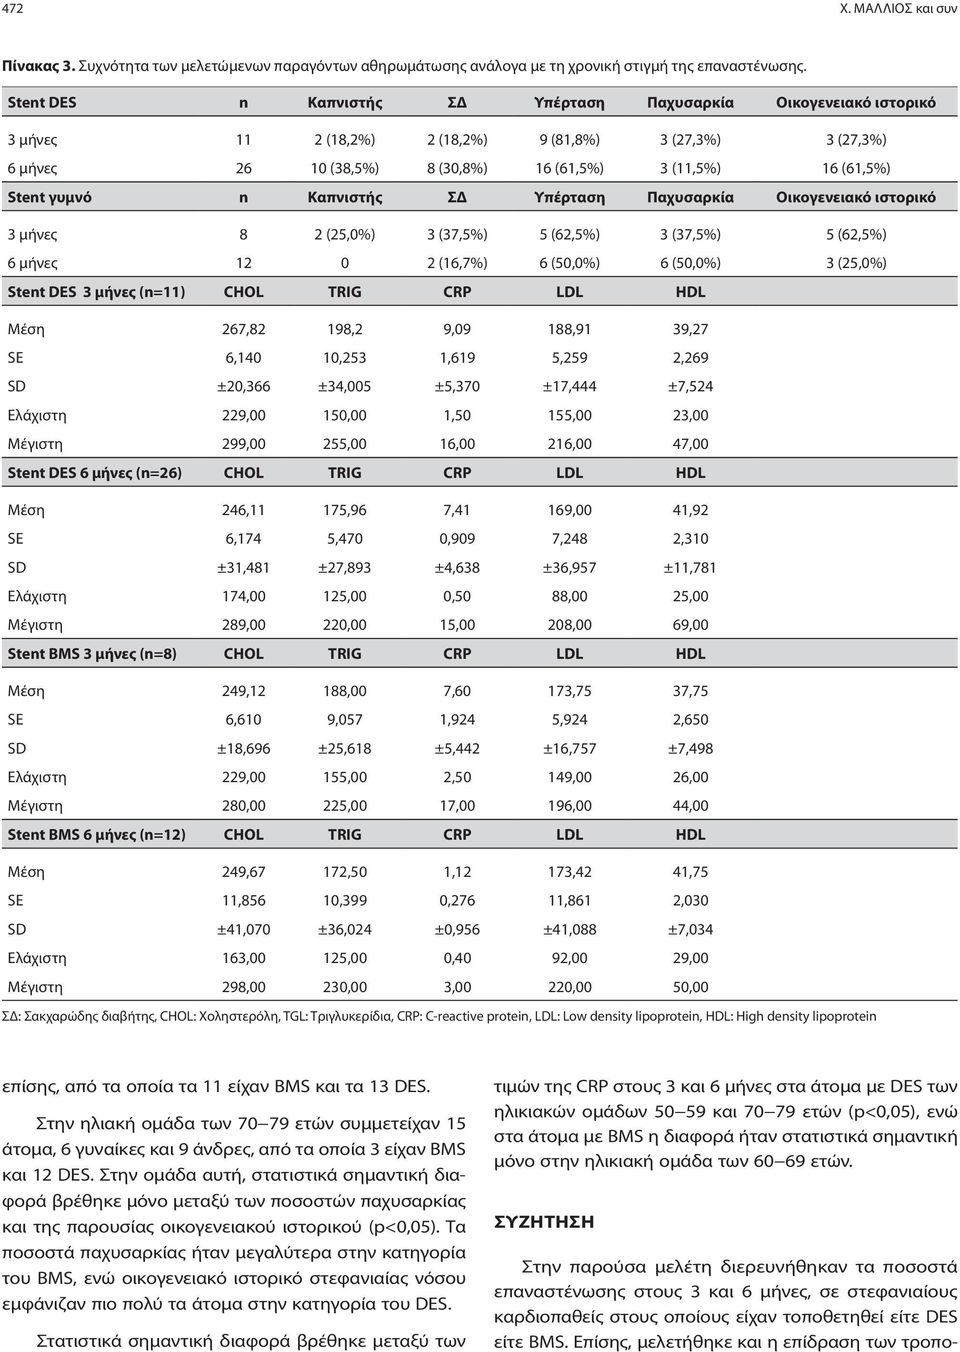 γυμνό n Καπνιστής ΣΔ Υπέρταση Παχυσαρκία Οικογενειακό ιστορικό 3 μήνες 8 2 (25,0%) 3 (37,5%) 5 (62,5%) 3 (37,5%) 5 (62,5%) 6 μήνες 12 0 2 (16,7%) 6 (50,0%) 6 (50,0%) 3 (25,0%) Stent DES 3 μήνες